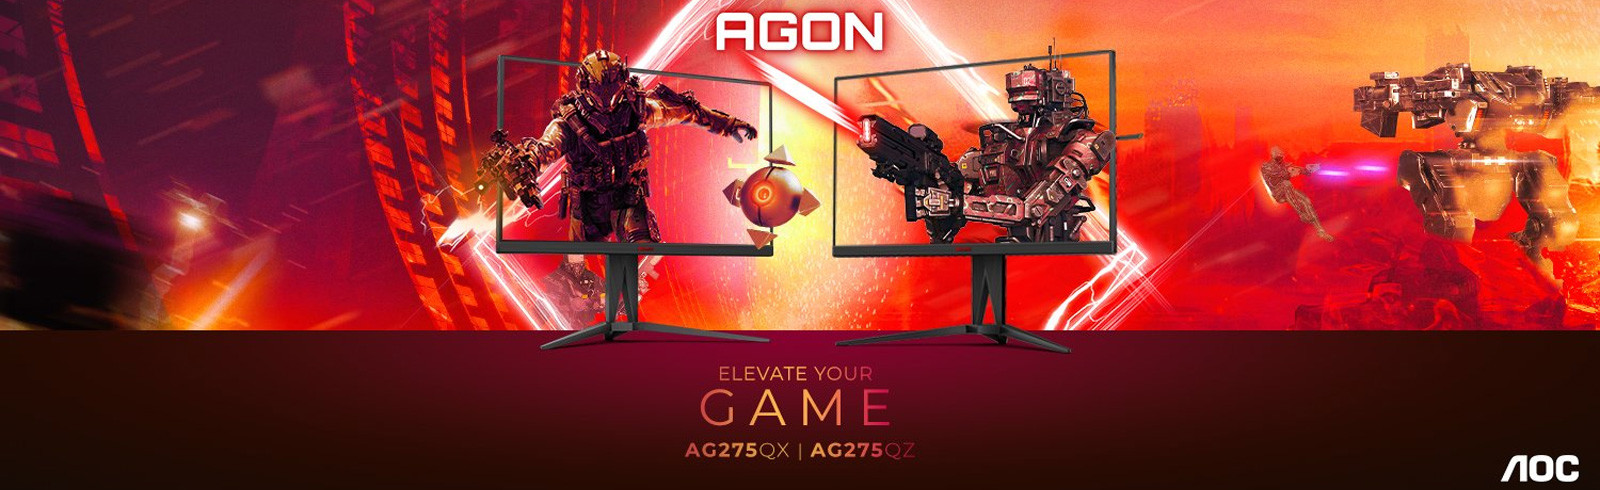 Giới thiệu thương hiệu màn hình chơi game hàng đầu thế giới: AGON của AOC